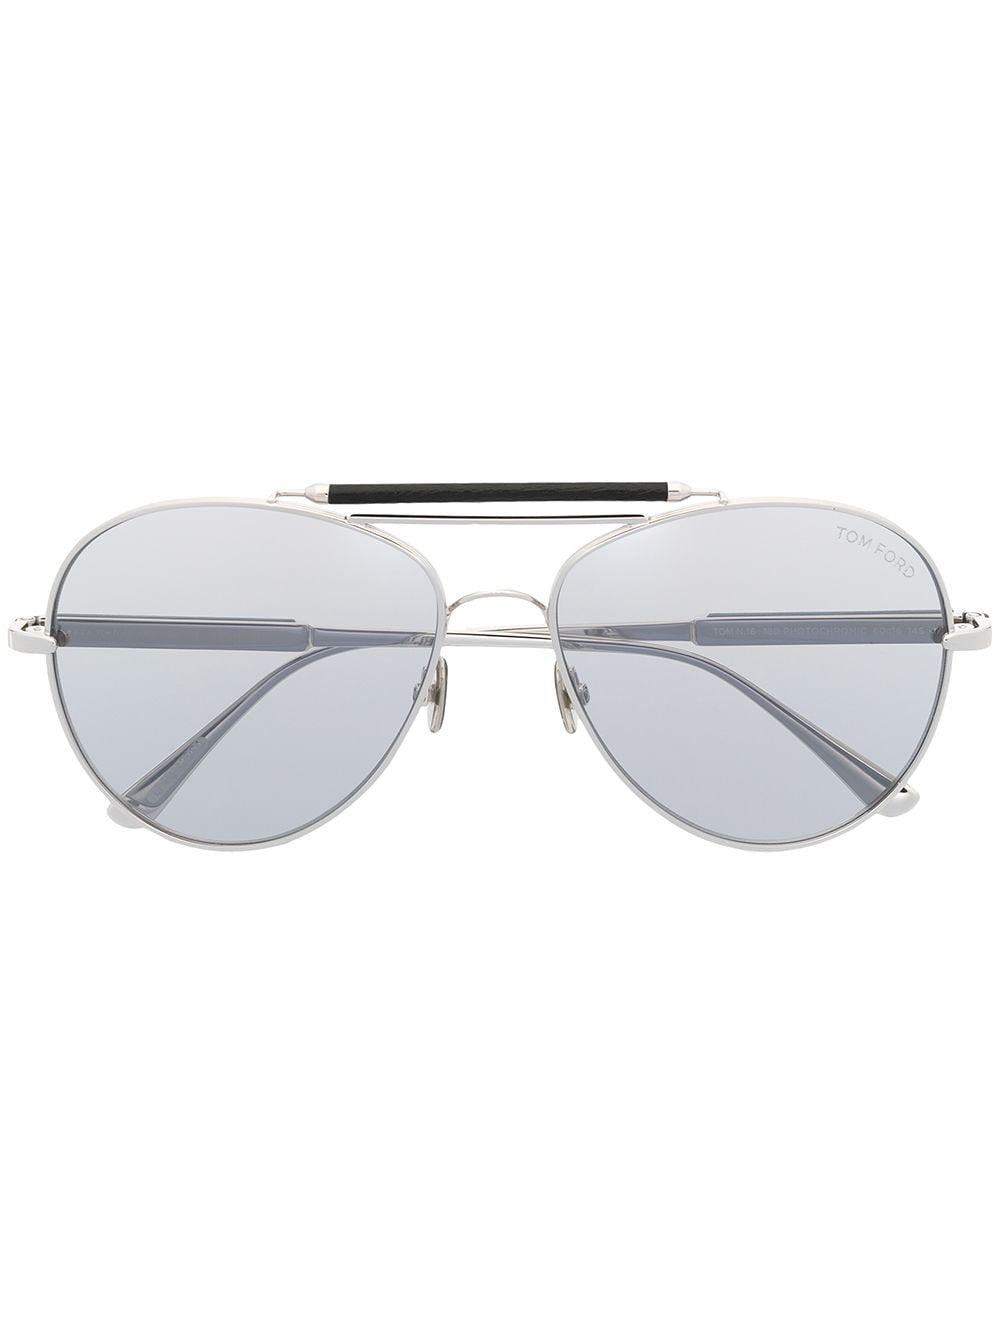 TOM FORD FT0704P Titanium Sunglasses - Andre Opticas